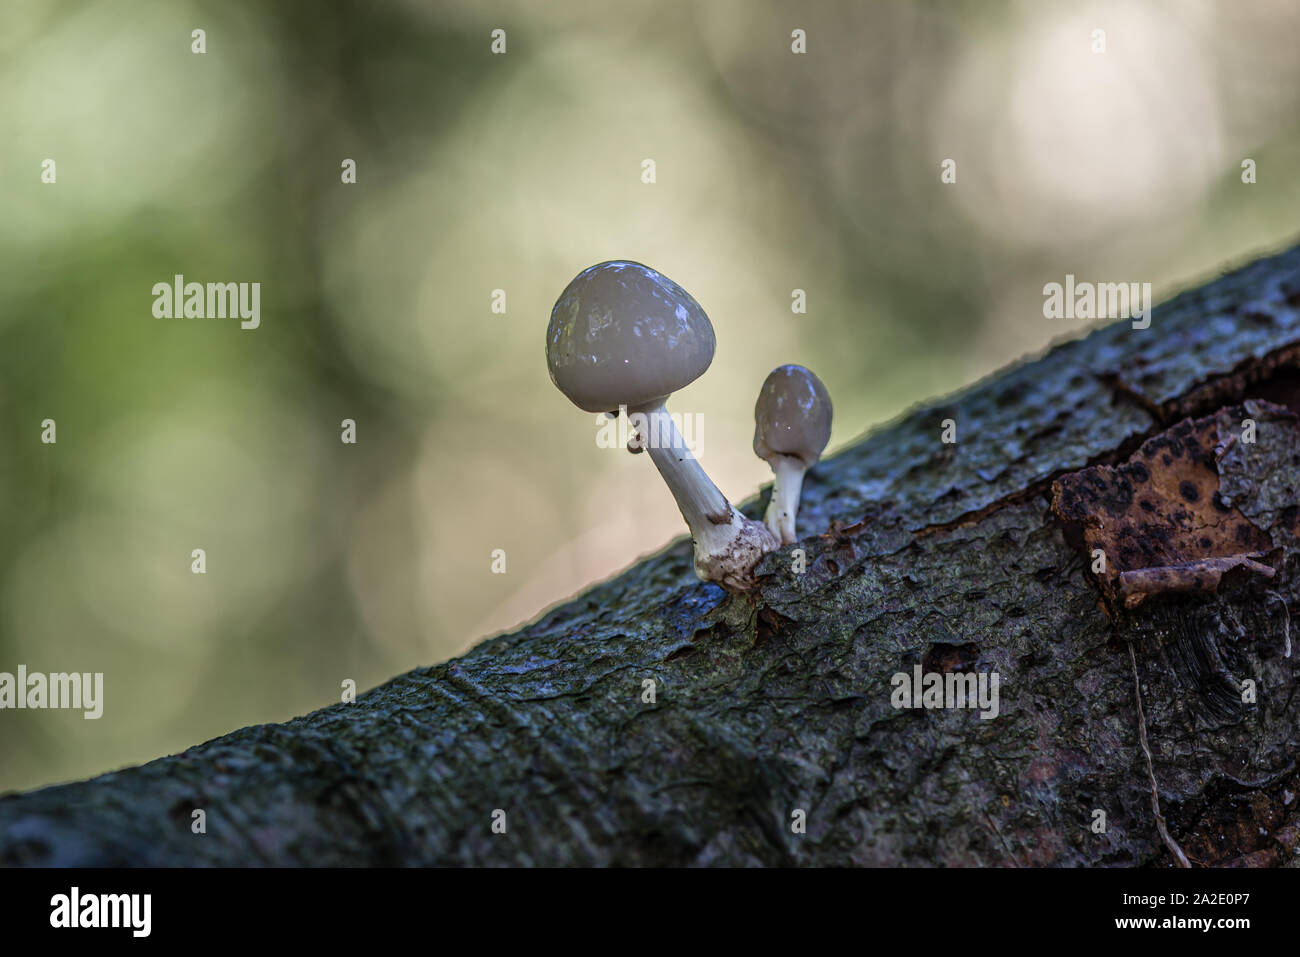 Cerca de porcelana de setas (Oudemansiella mucida) en un registro de roble en un bosque en otoño Foto de stock